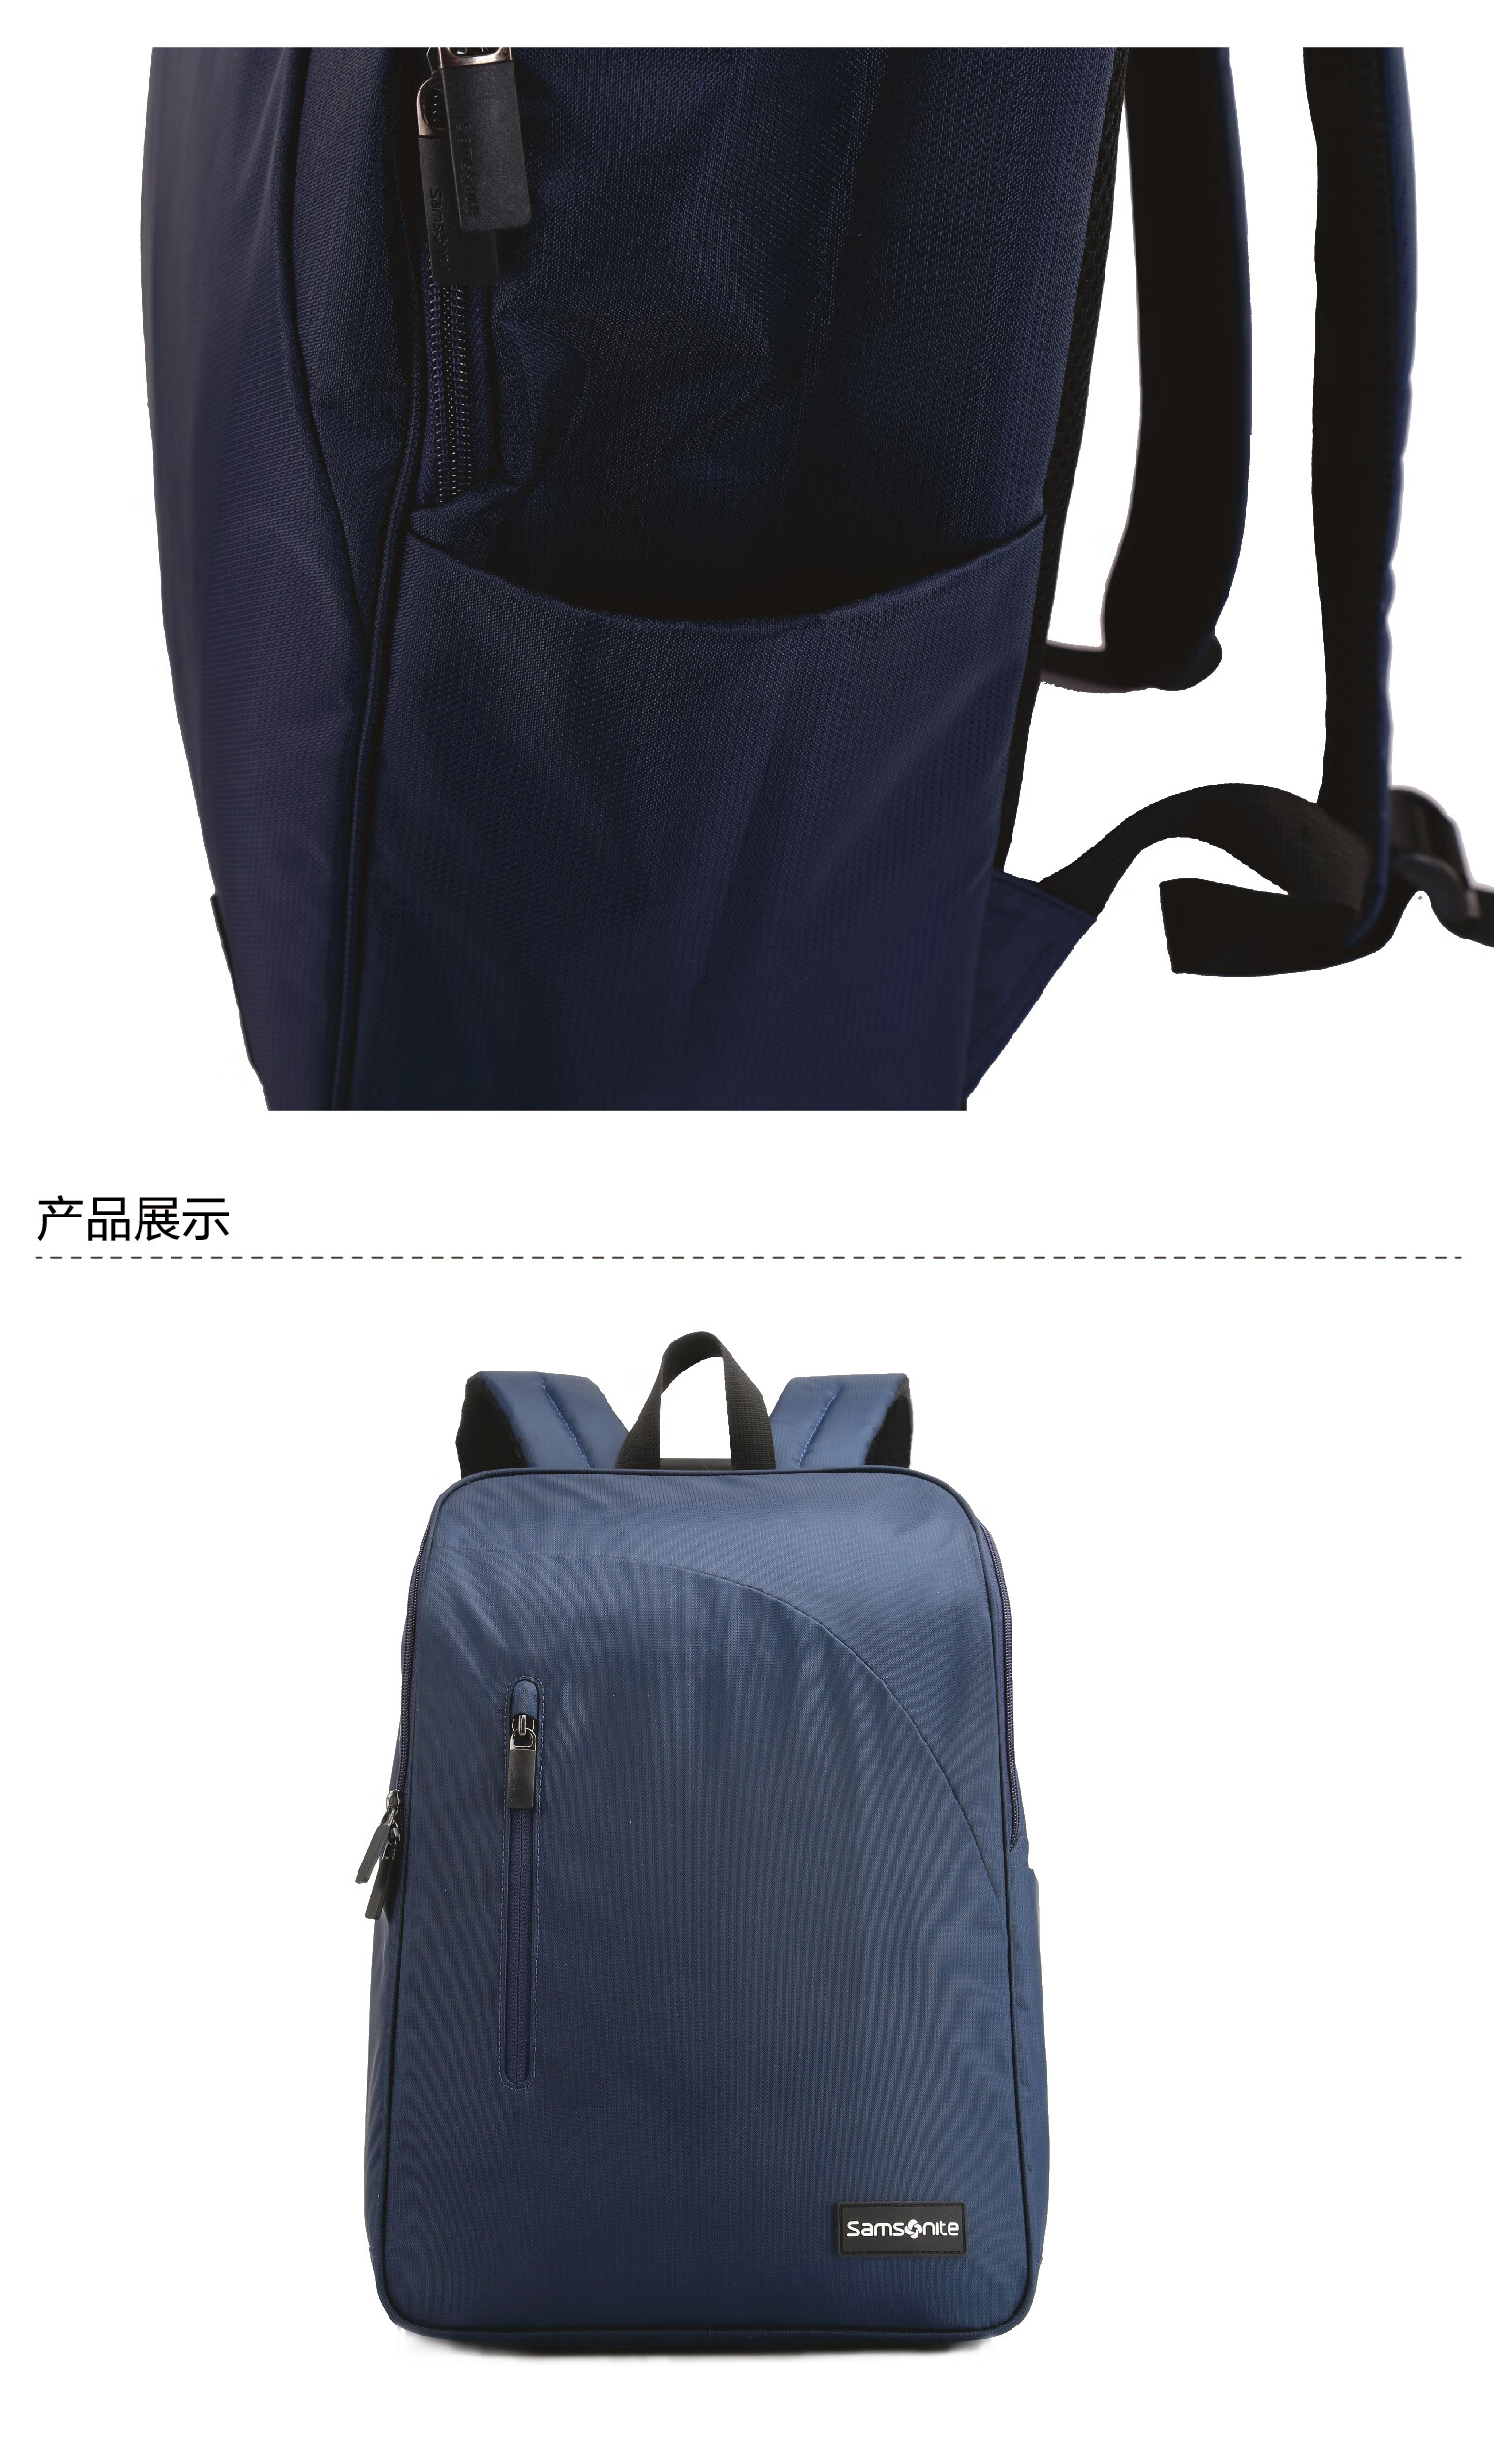 【预售】samsonite/新秀丽双肩包新款 时尚休闲背包 户外休闲男女背包